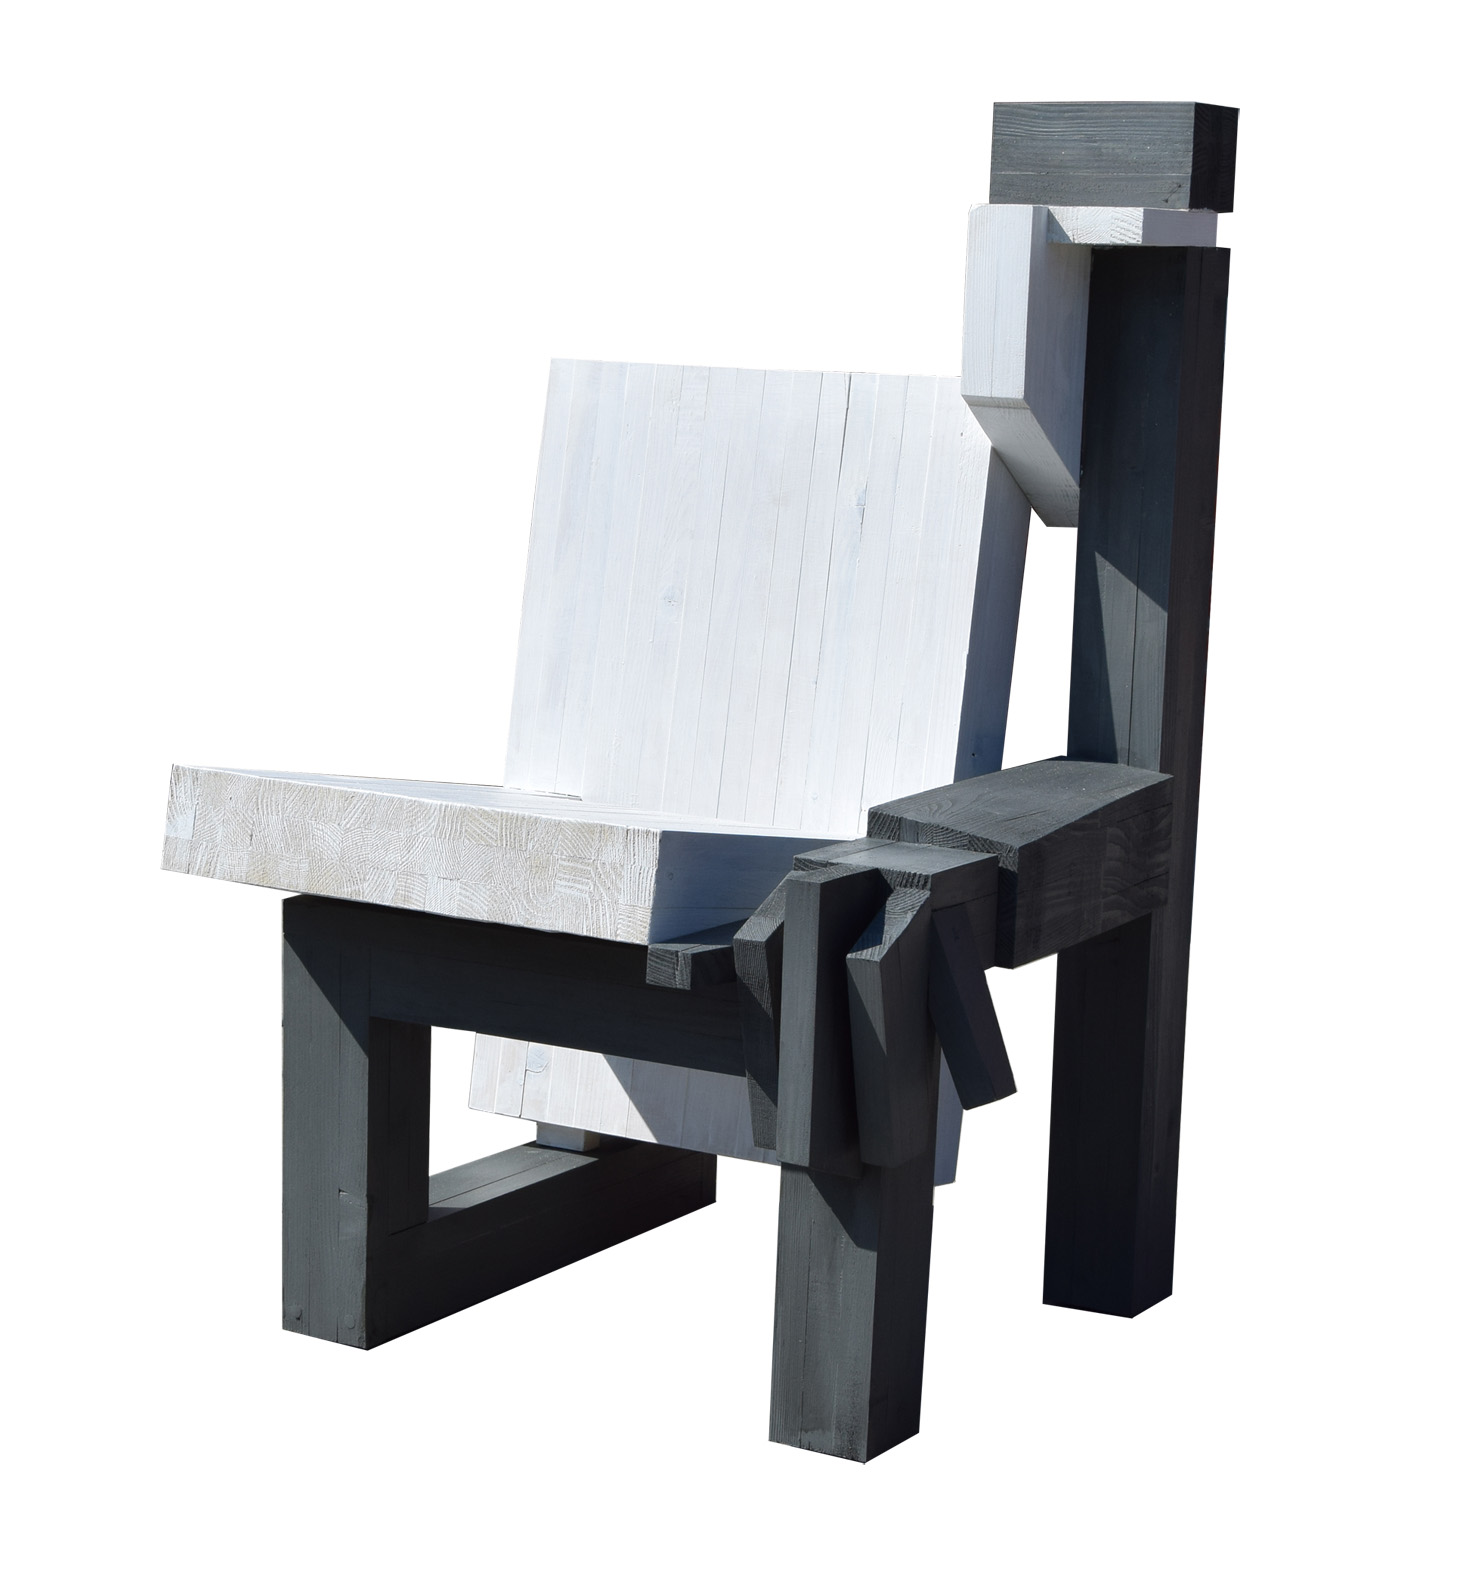 Fotel, 2016 rok, drewno klejone, patynowane, 100 x 54 x 54 cm